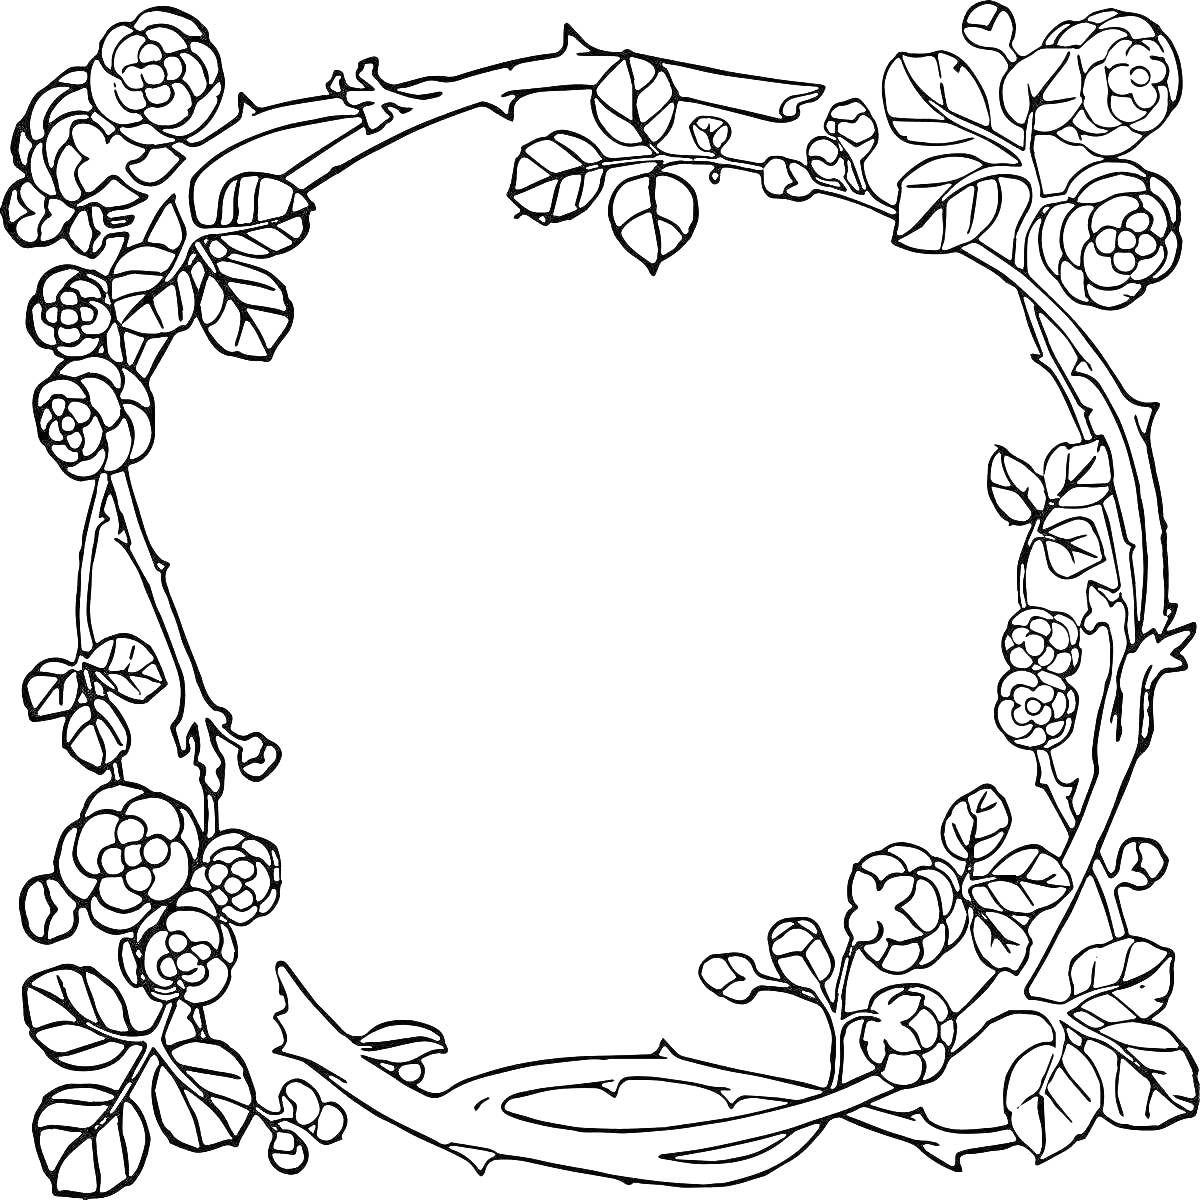 Раскраска Красивая рамка с цветами и листьями